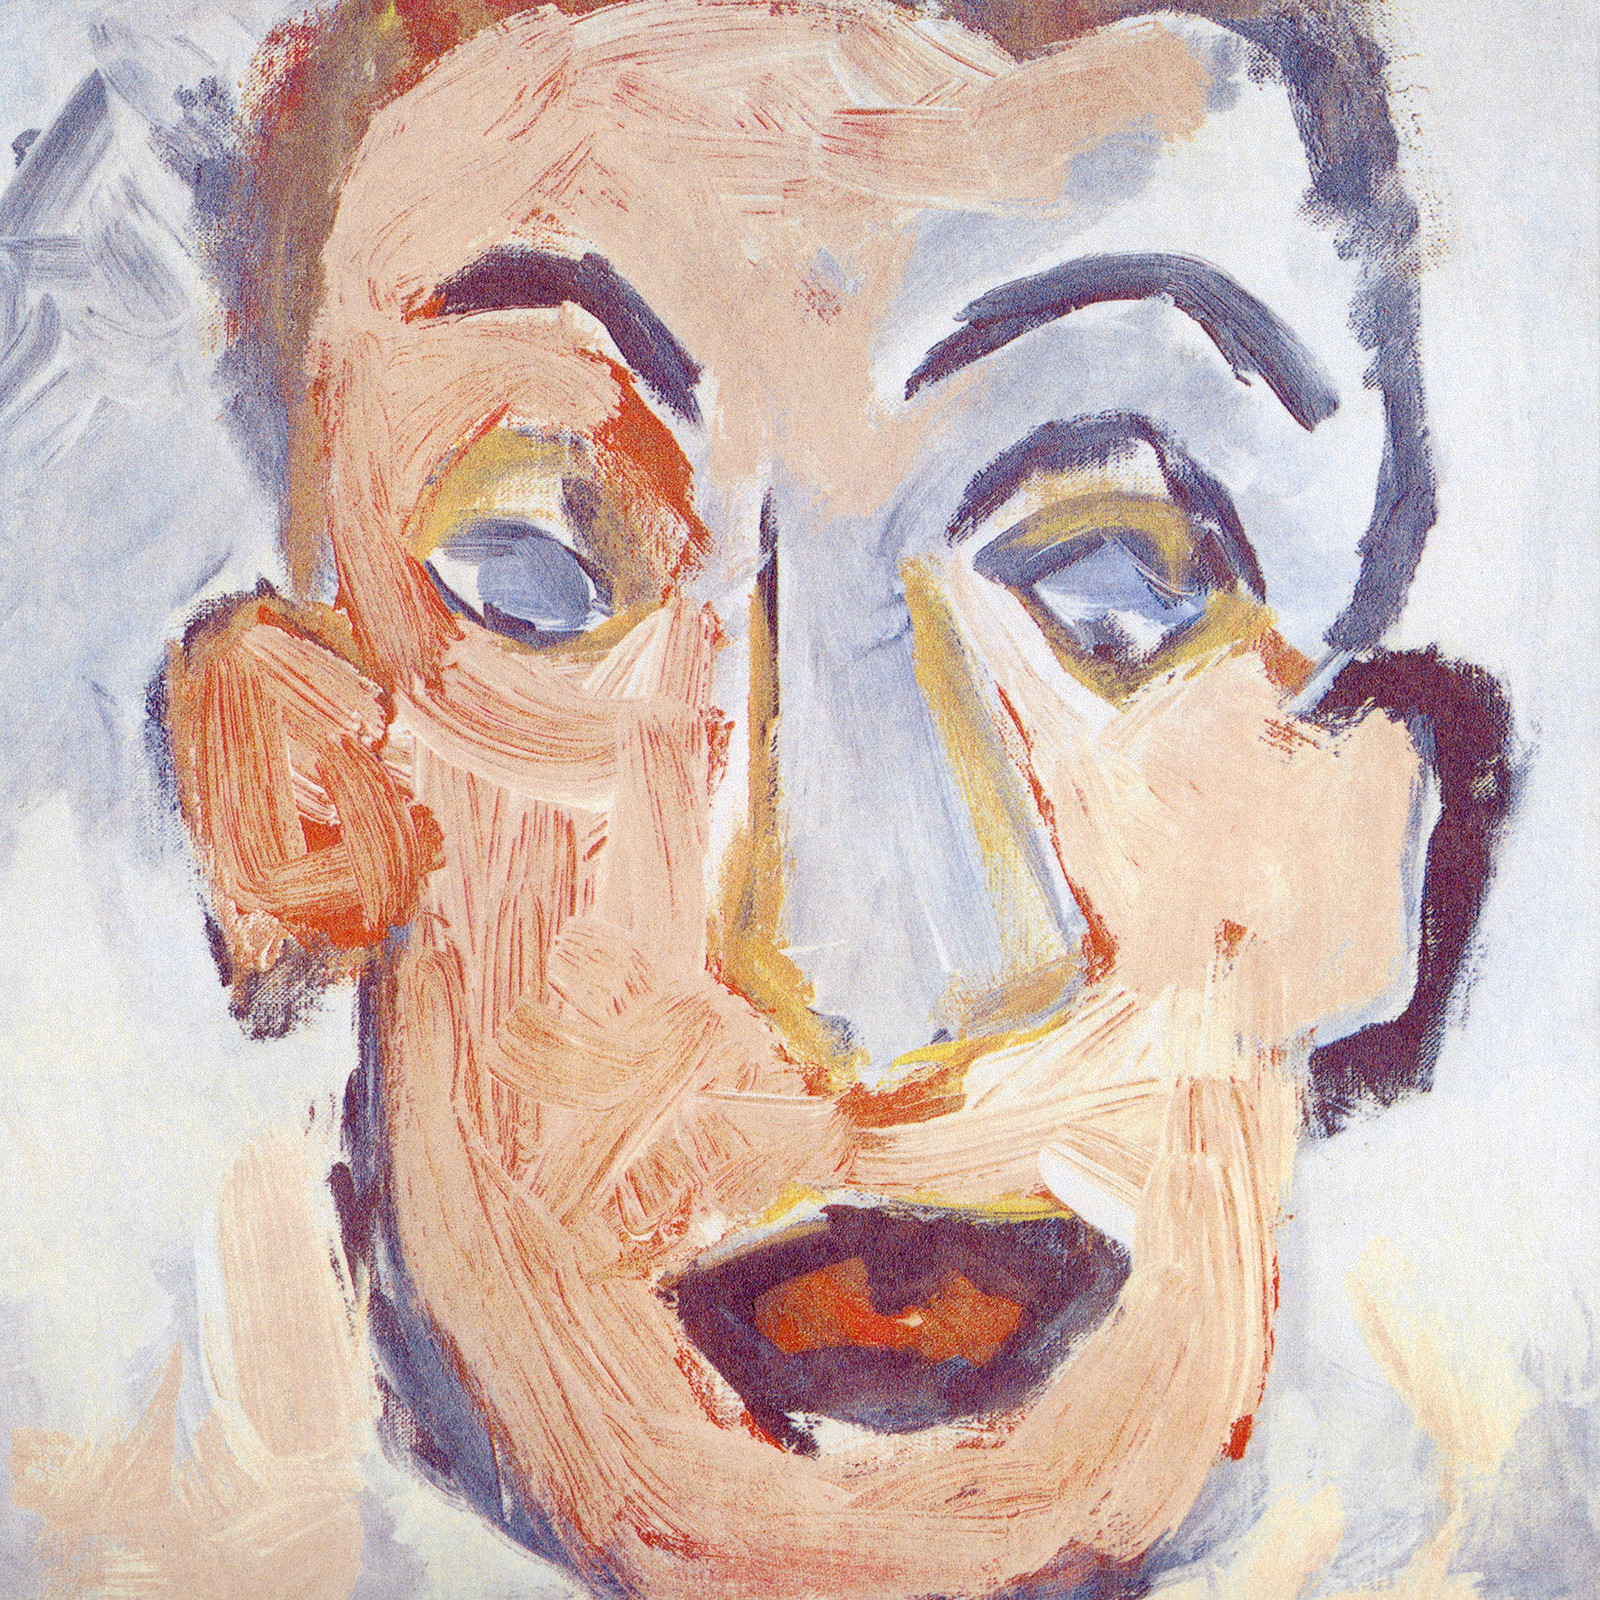 Bob Dylan self portrait